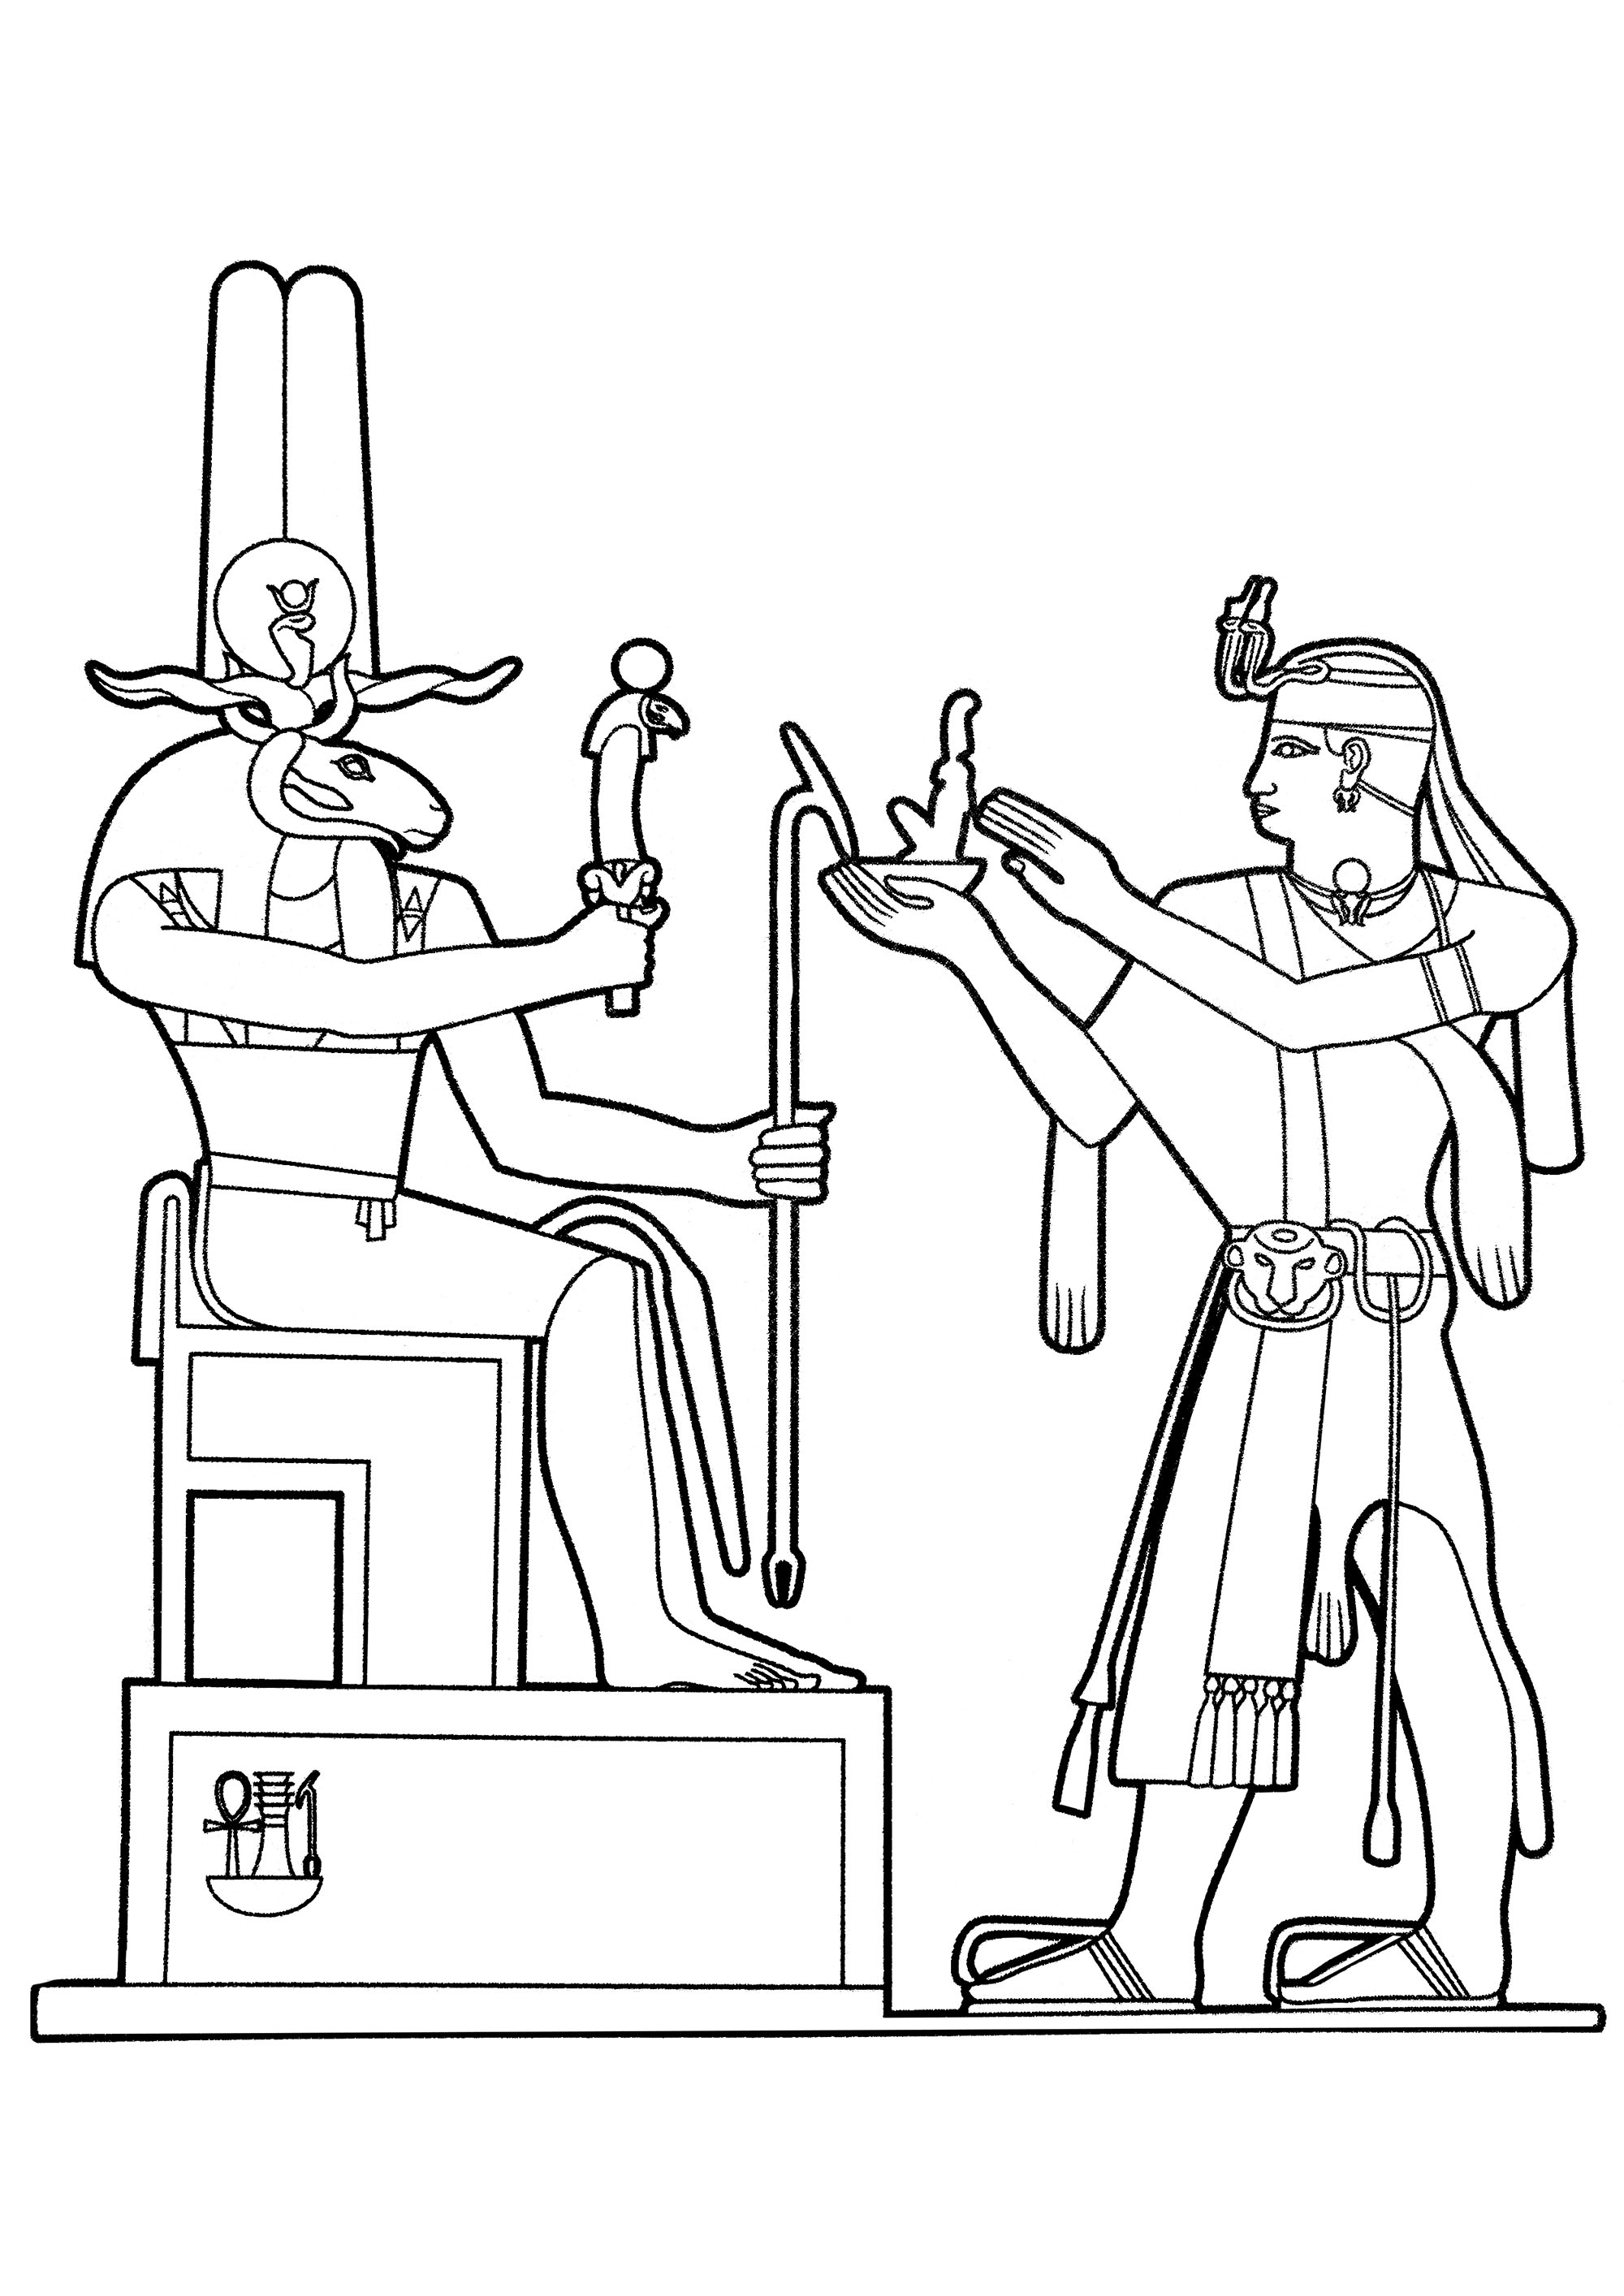 Il dio egiziano Khnum riceve un'offerta. Khnum è un dio con le corna dritte e la testa d'ariete che viene spesso raffigurato mentre crea esseri umani sul suo tornio, Khnum è emerso da due caverne del mondo sotterraneo nell'oceano di Nun.